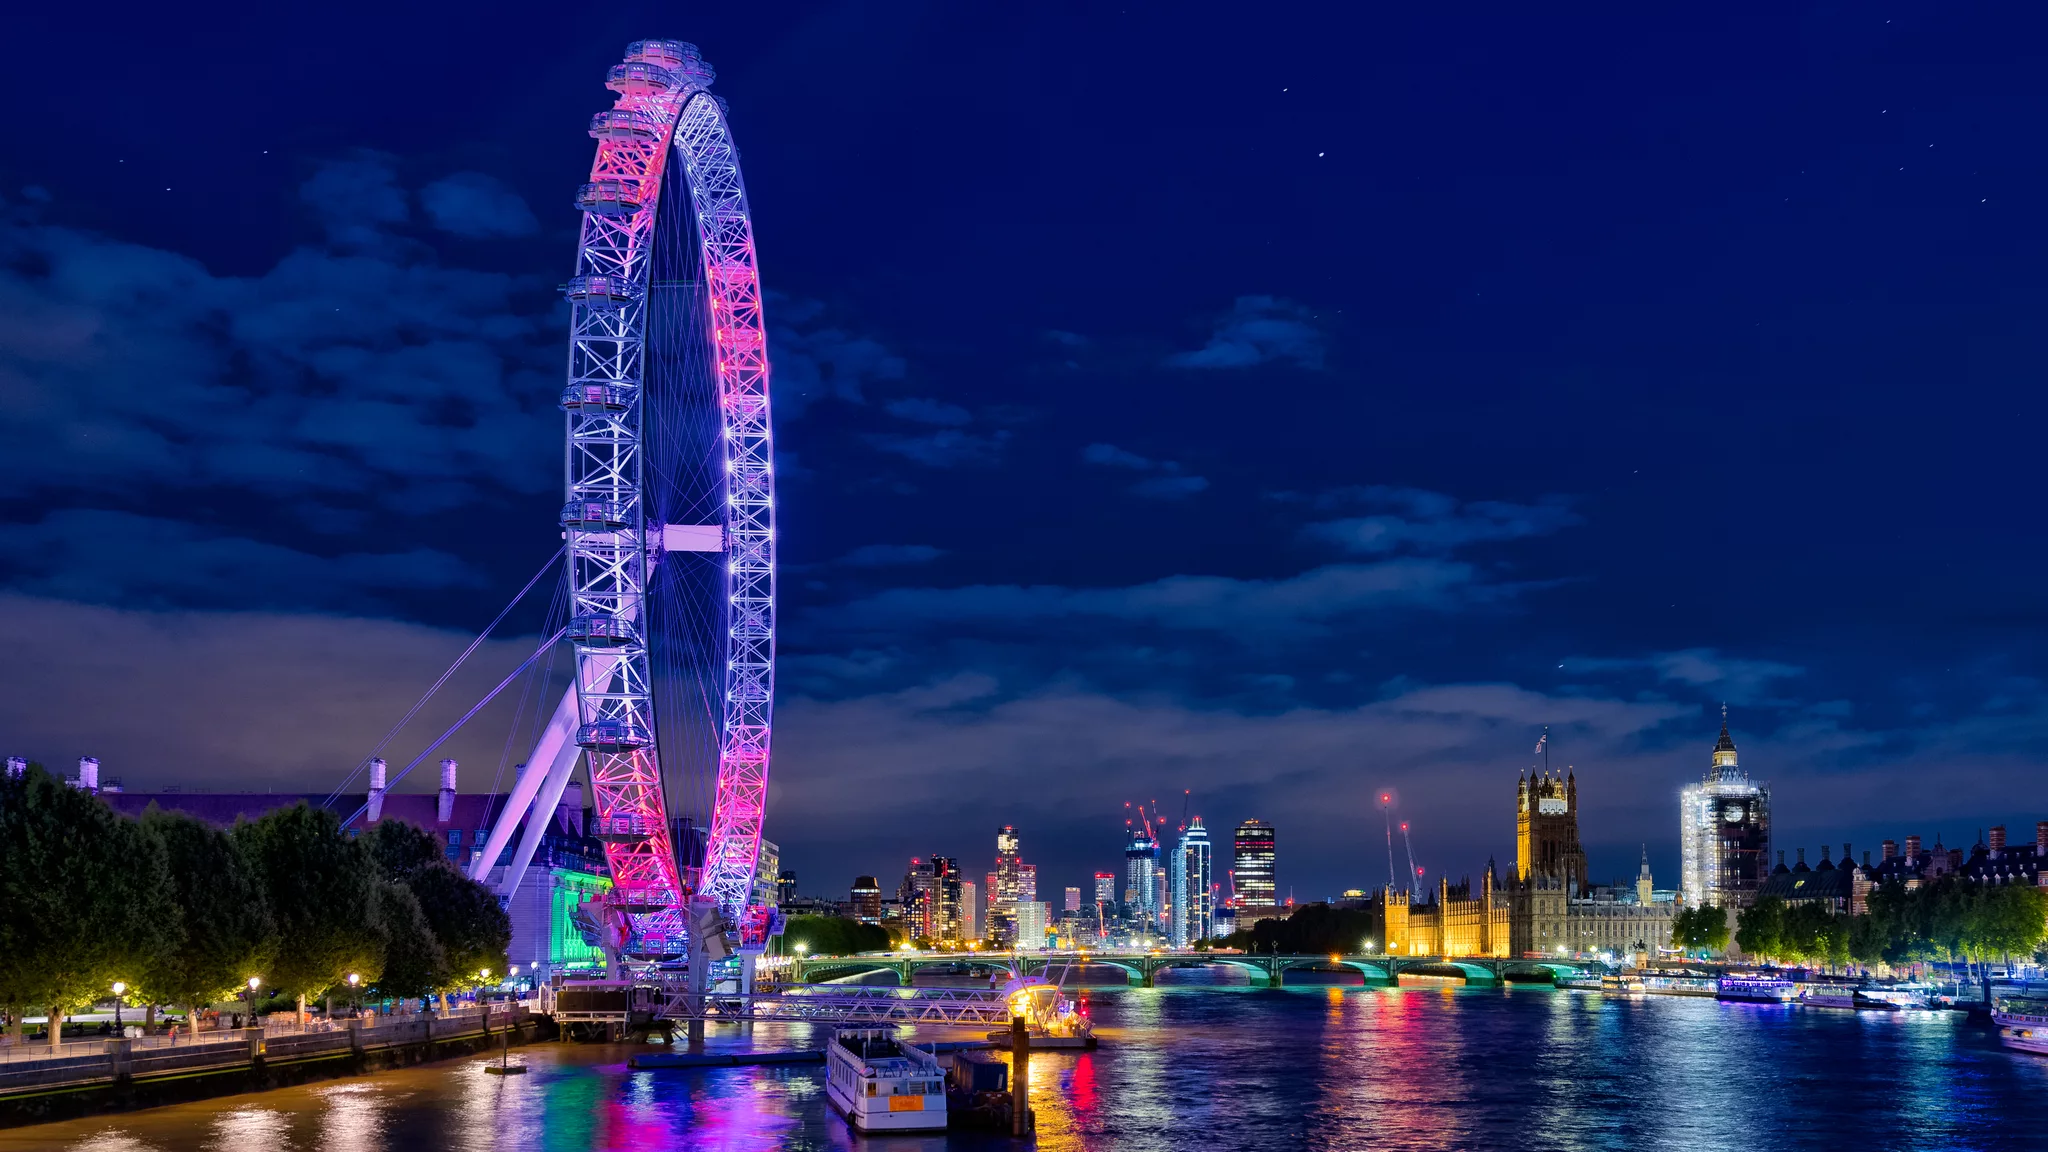 London Eye from Golden Jubilee Bridges, United Kingdom